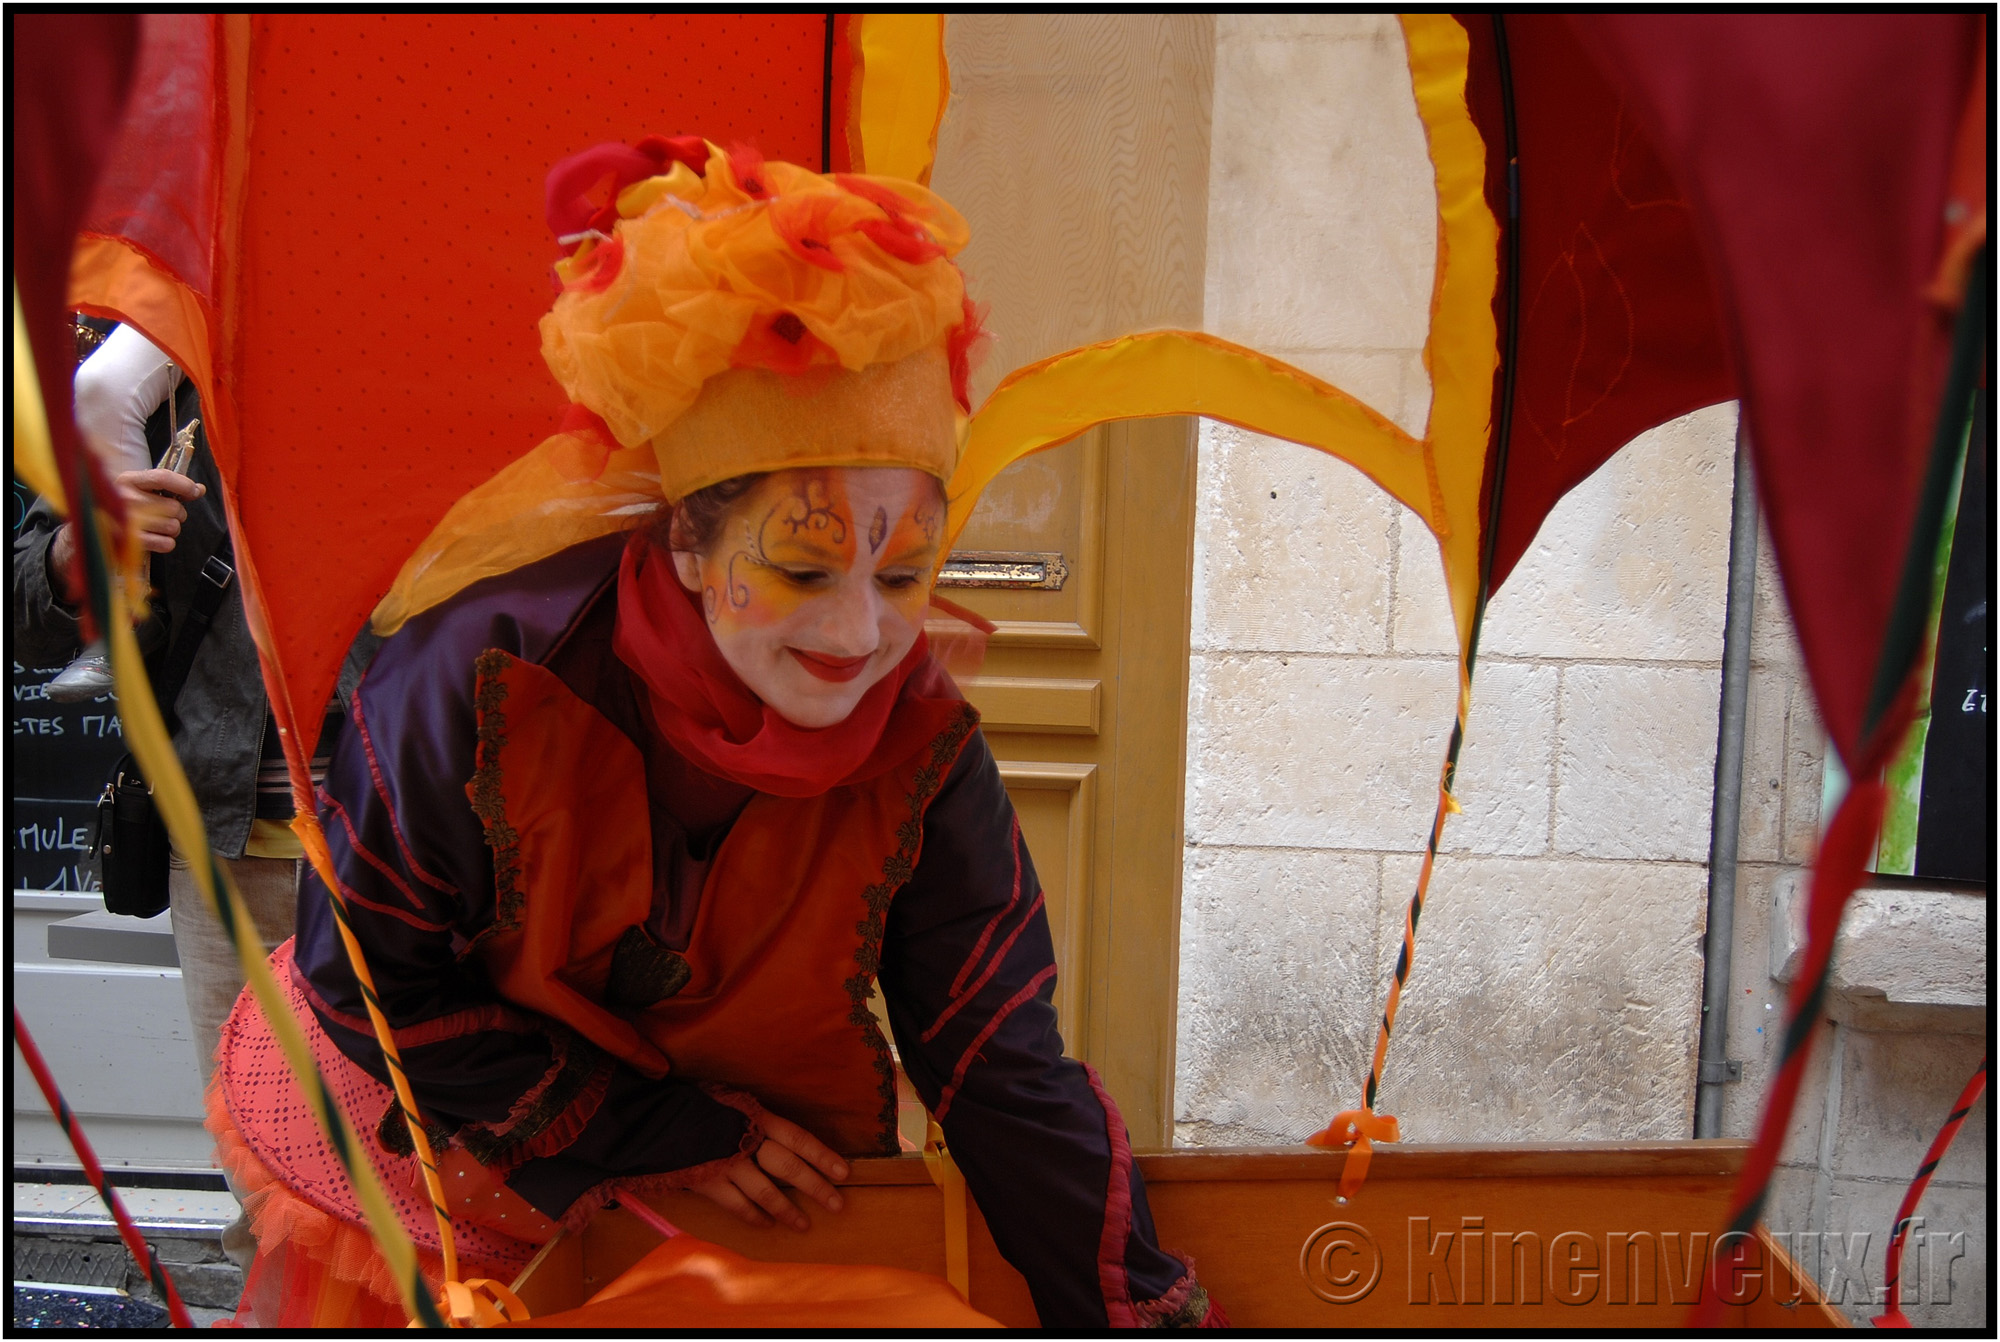 kinenveux_44_carnaval2015lr.jpg - Carnaval des Enfants 2015 - La Rochelle